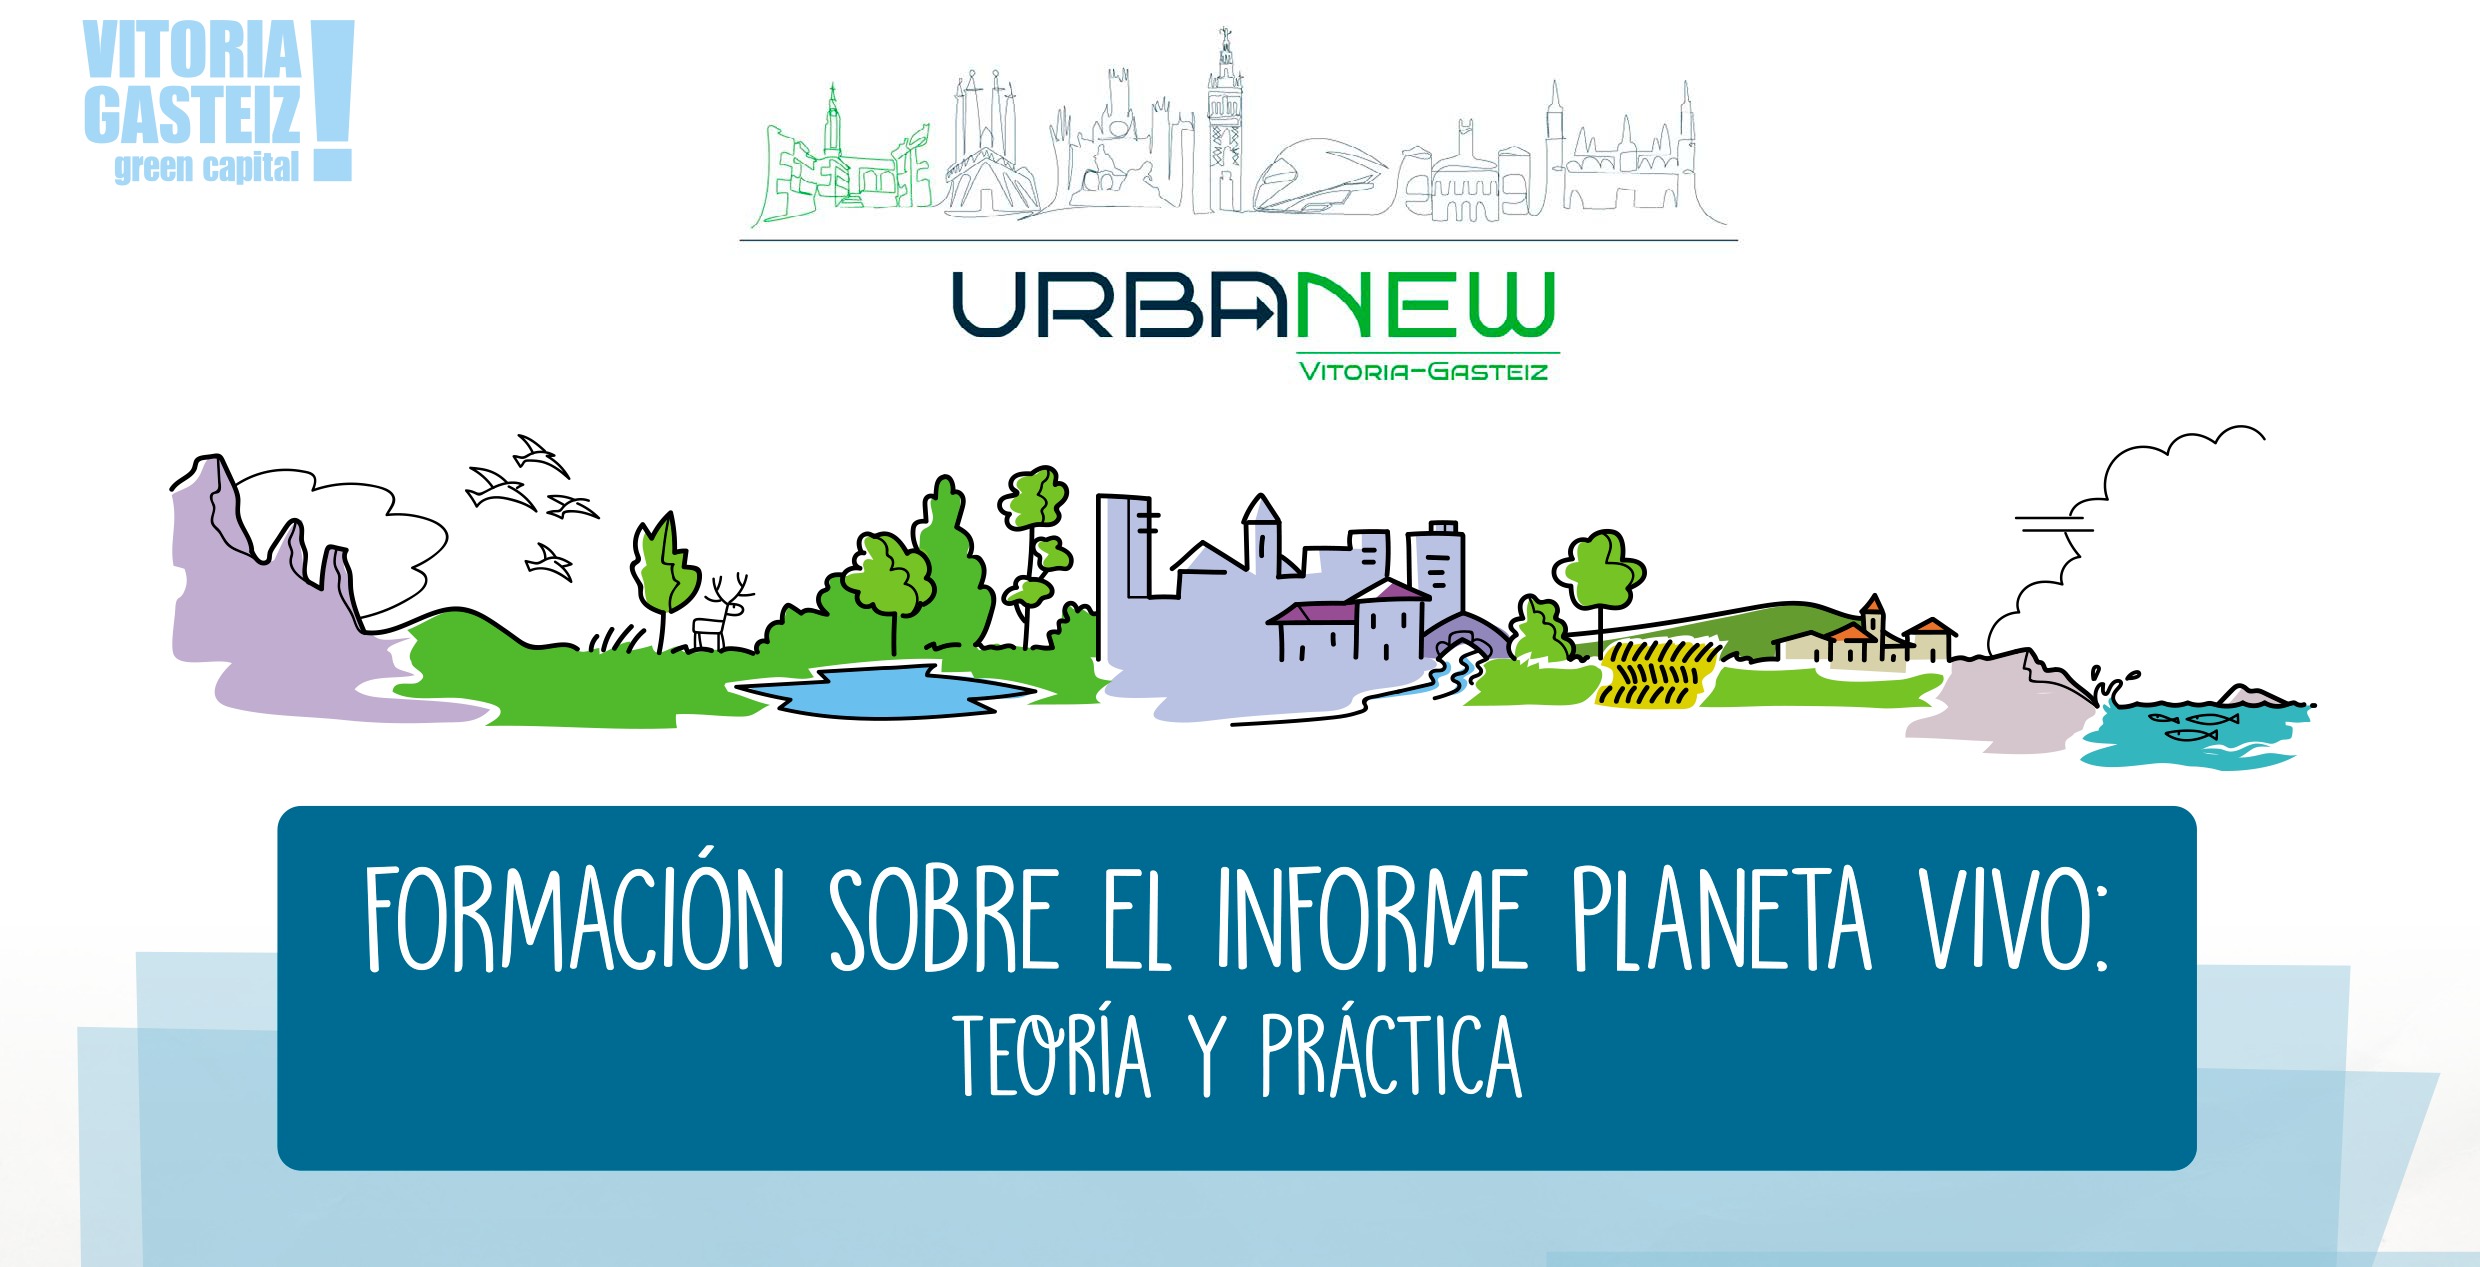 Jornada de presentación del informe Planeta Vivo en Vitoria-Gasteiz